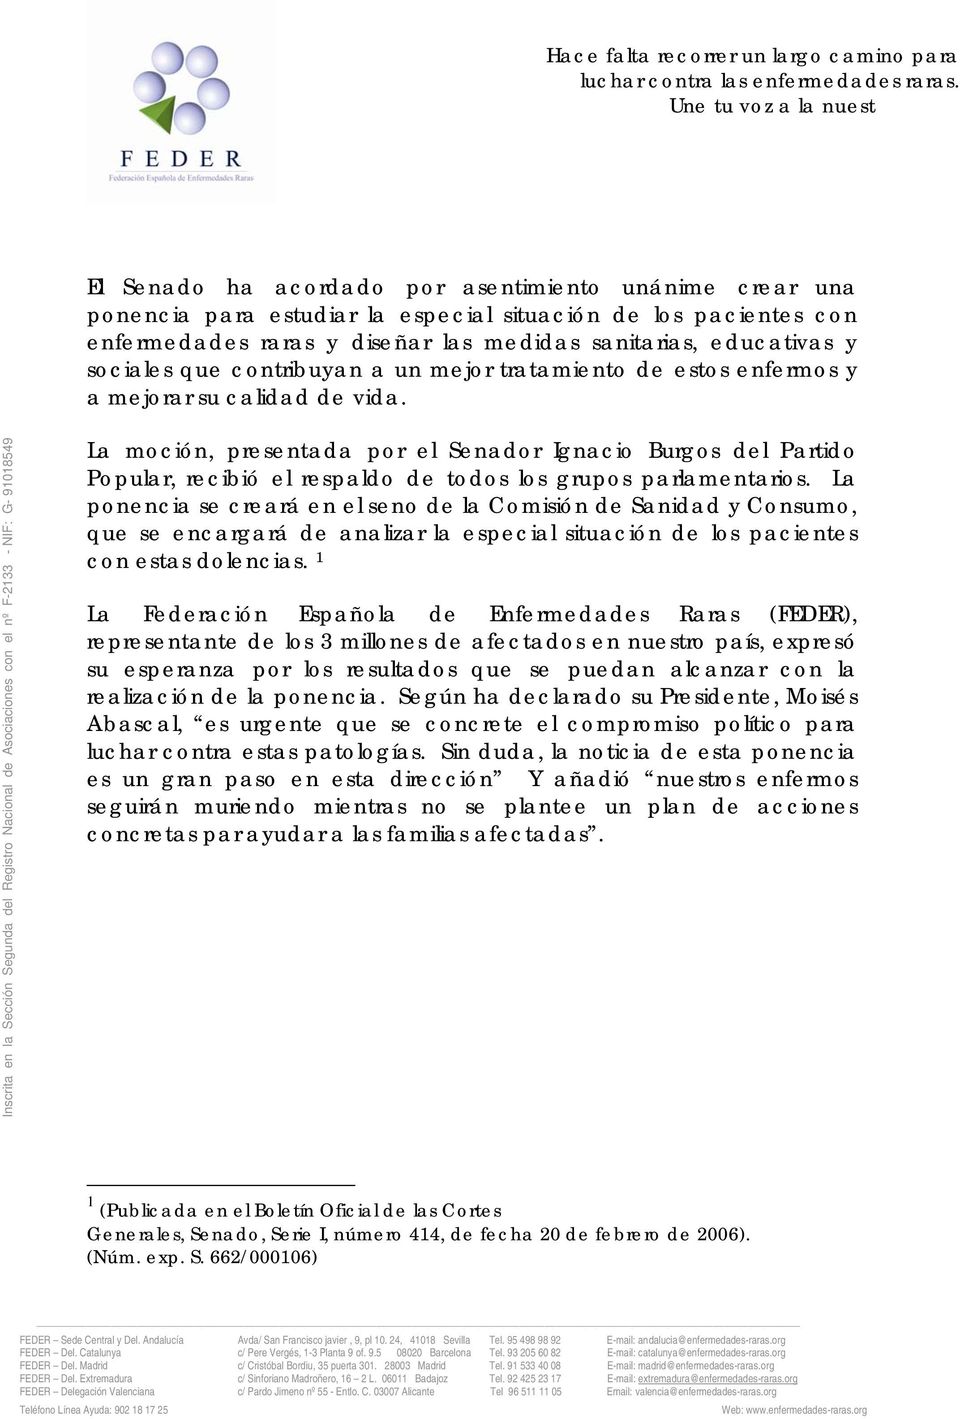 La moción, presentada por el Senador Ignacio Burgos del Partido Popular, recibió el respaldo de todos los grupos parlamentarios.